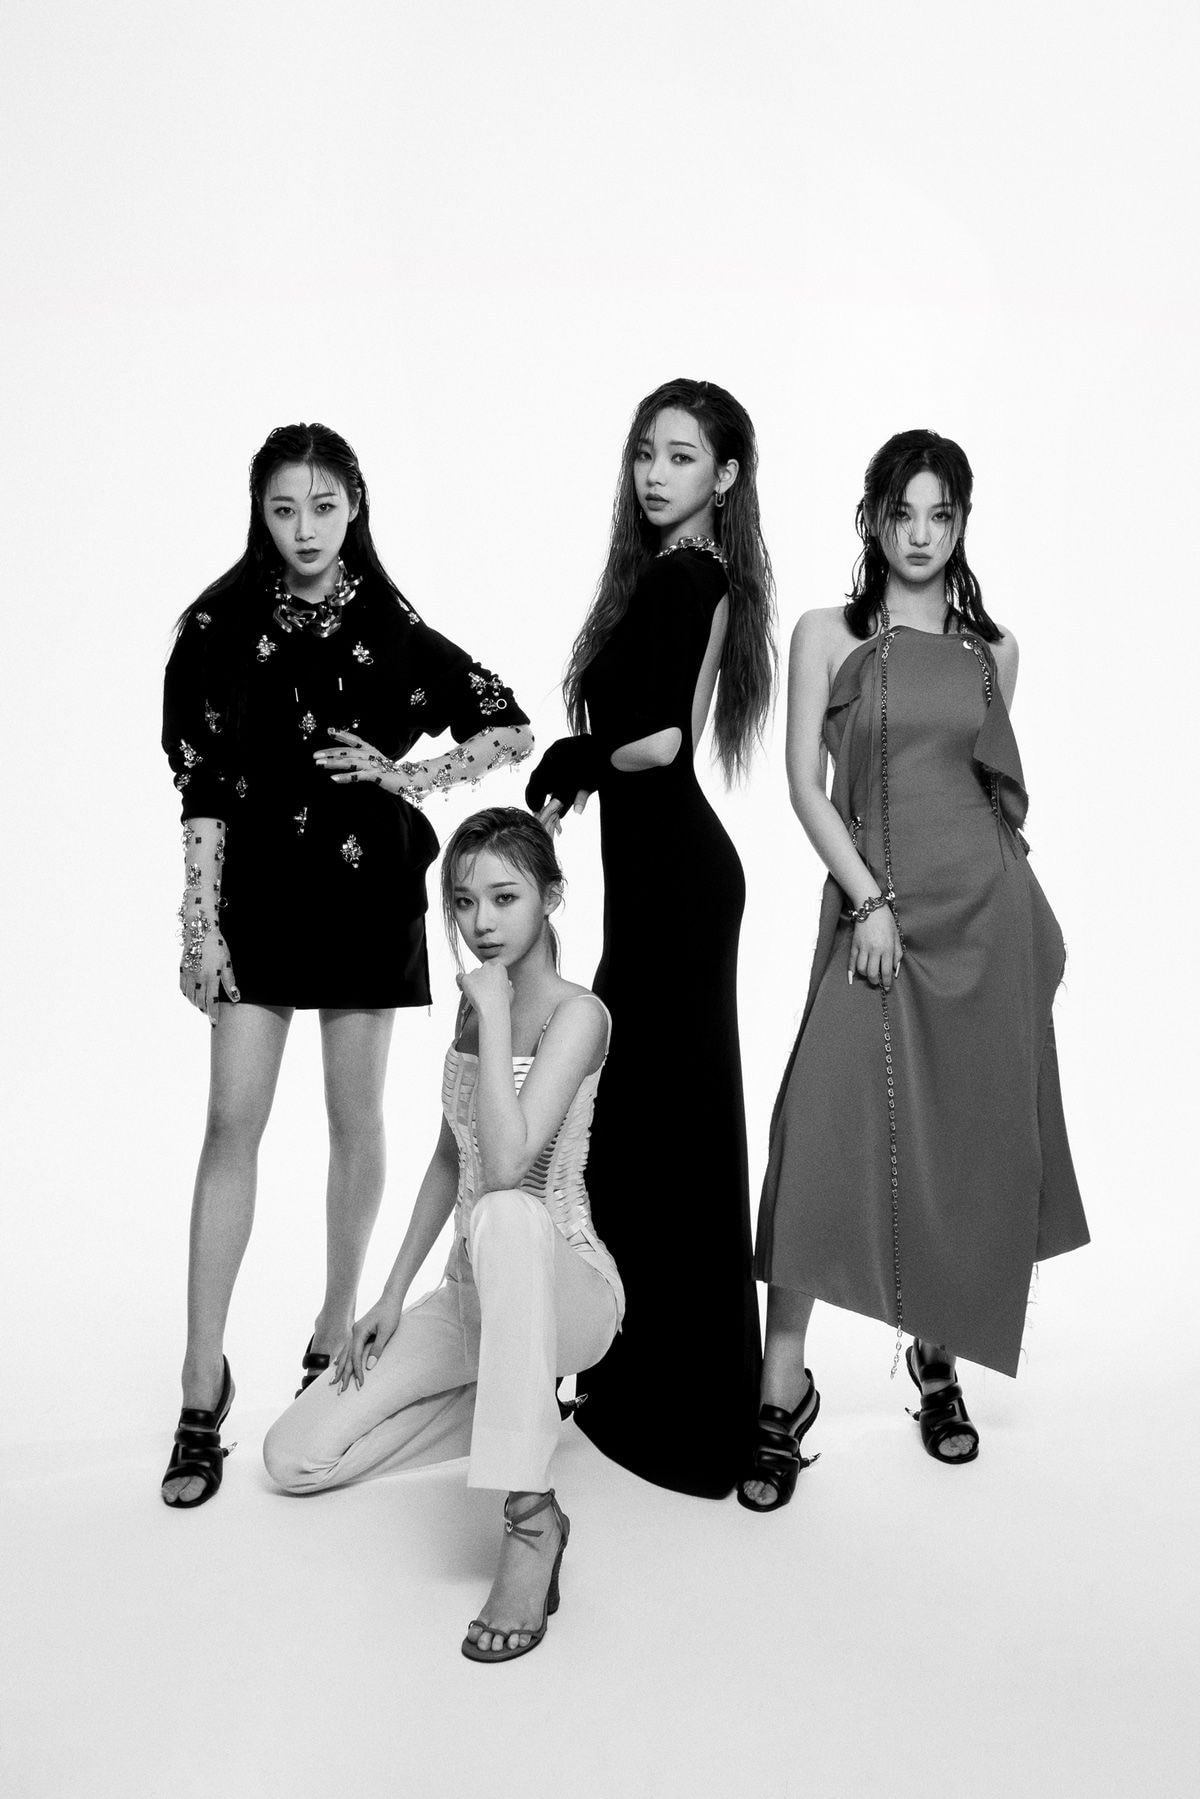 에스파, K-POP 아티스트 최초 ‘지방시’ 앰버서더 발탁!